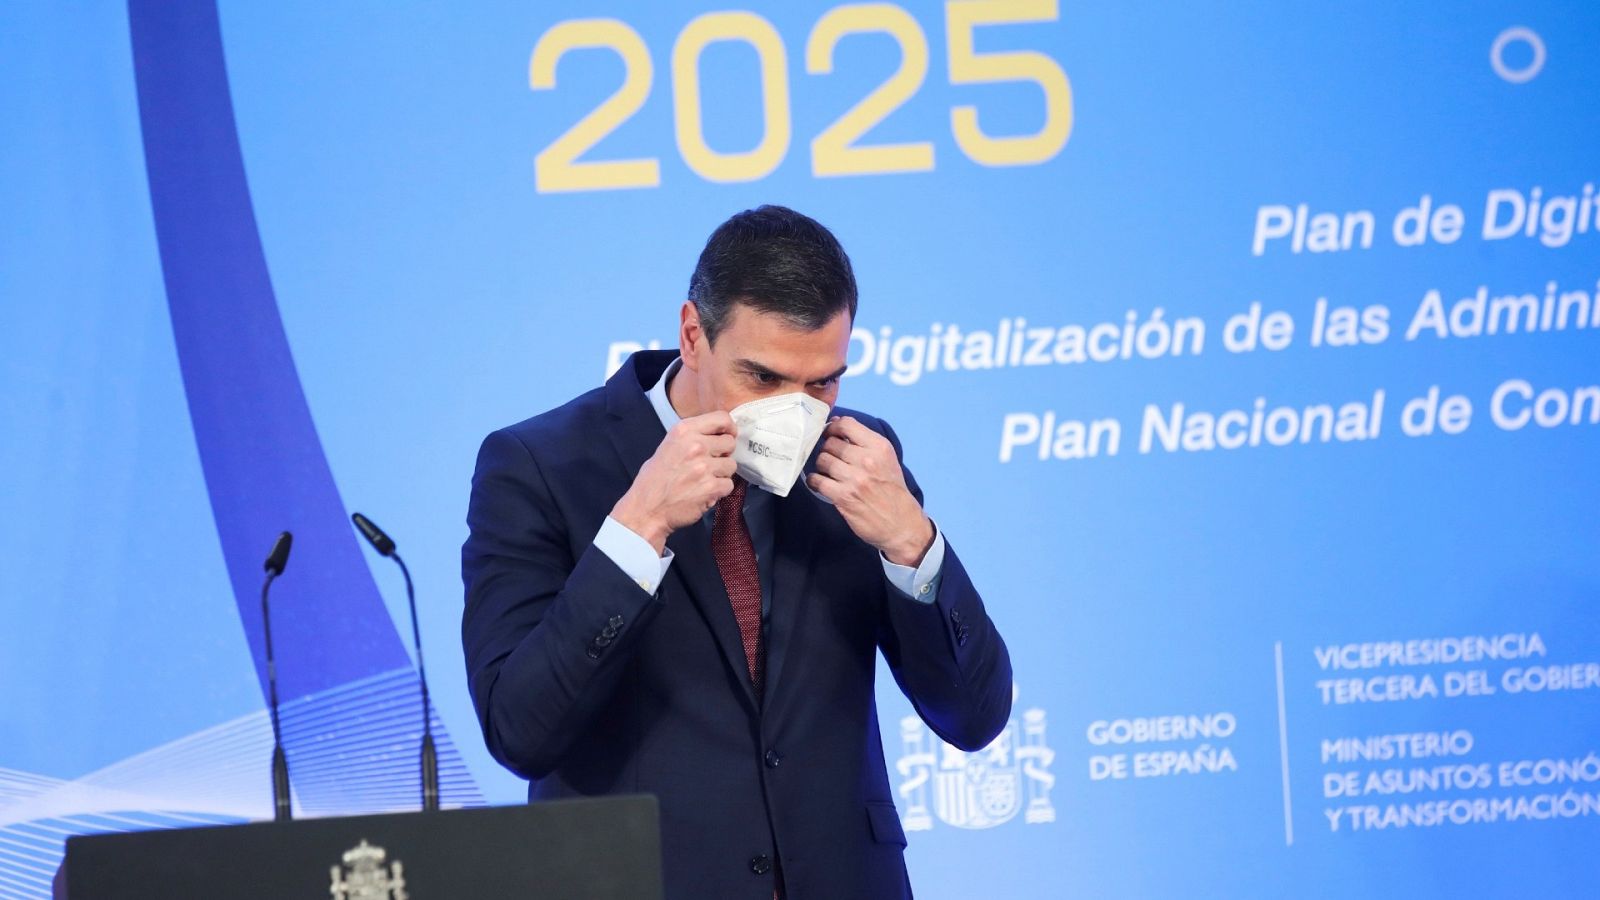 El presidente del Gobierno, Pedro Sánchez, presenta tres planes de digitalización